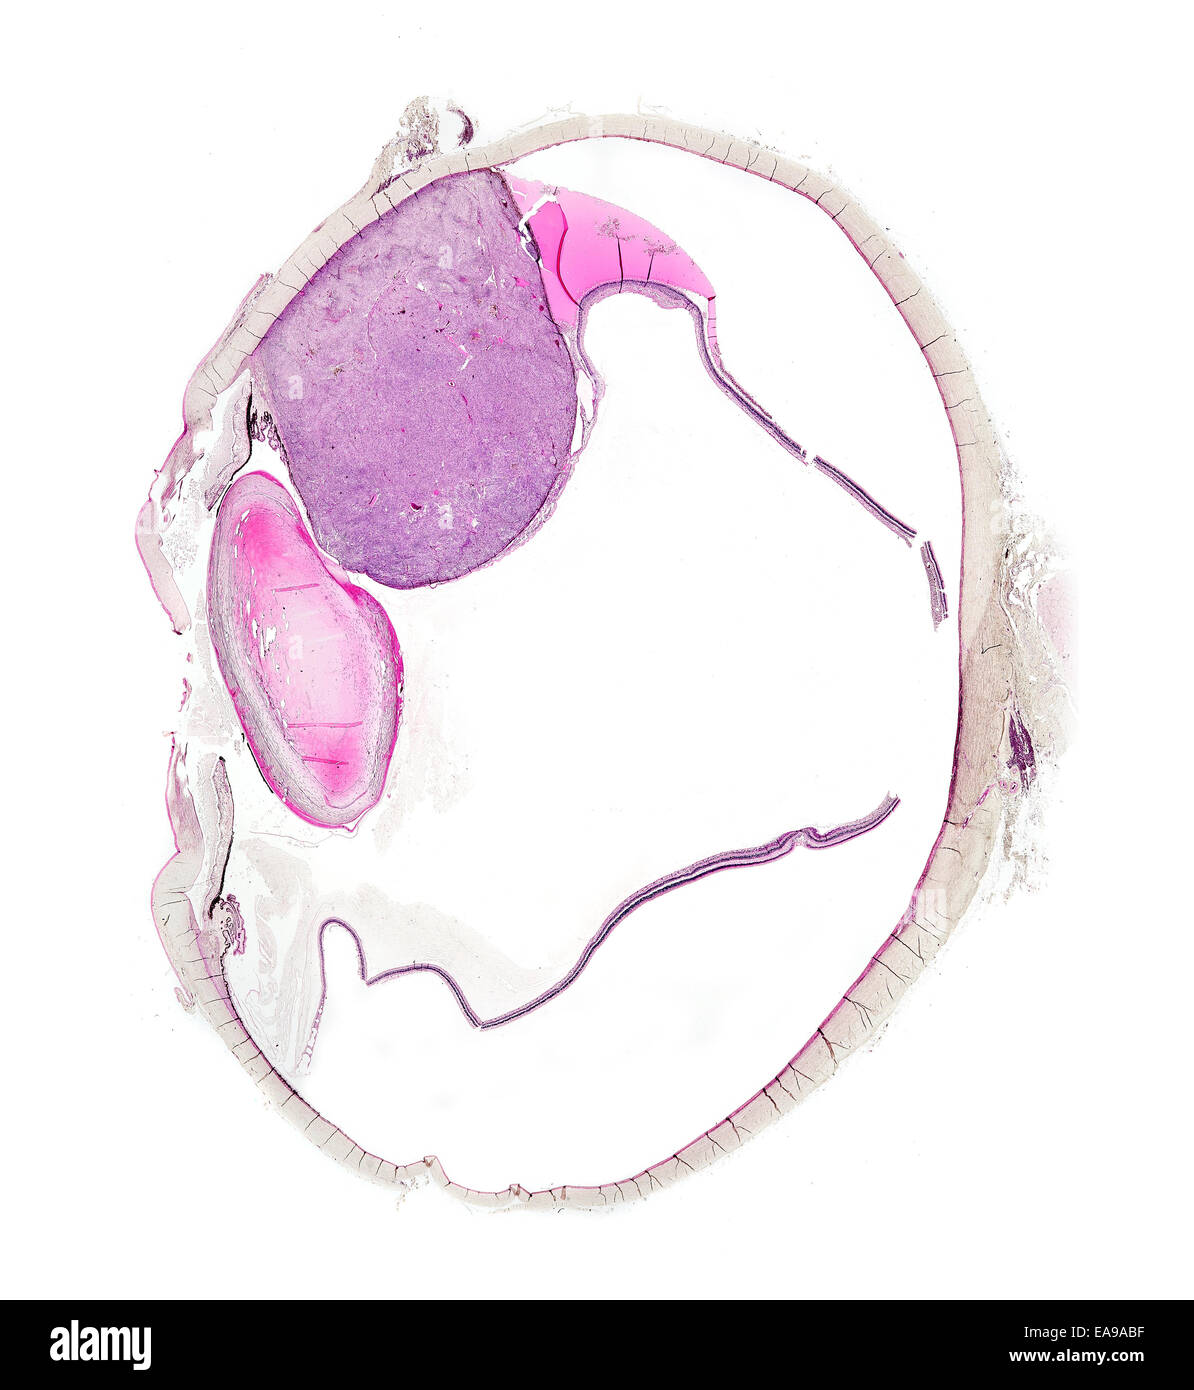 Menschliche Auge Abschnitt zeigt Struktur mit erkrankten pigmentierten Tumor (große rosa Fläche) Hellfeld Mikrophotographie Stockfoto